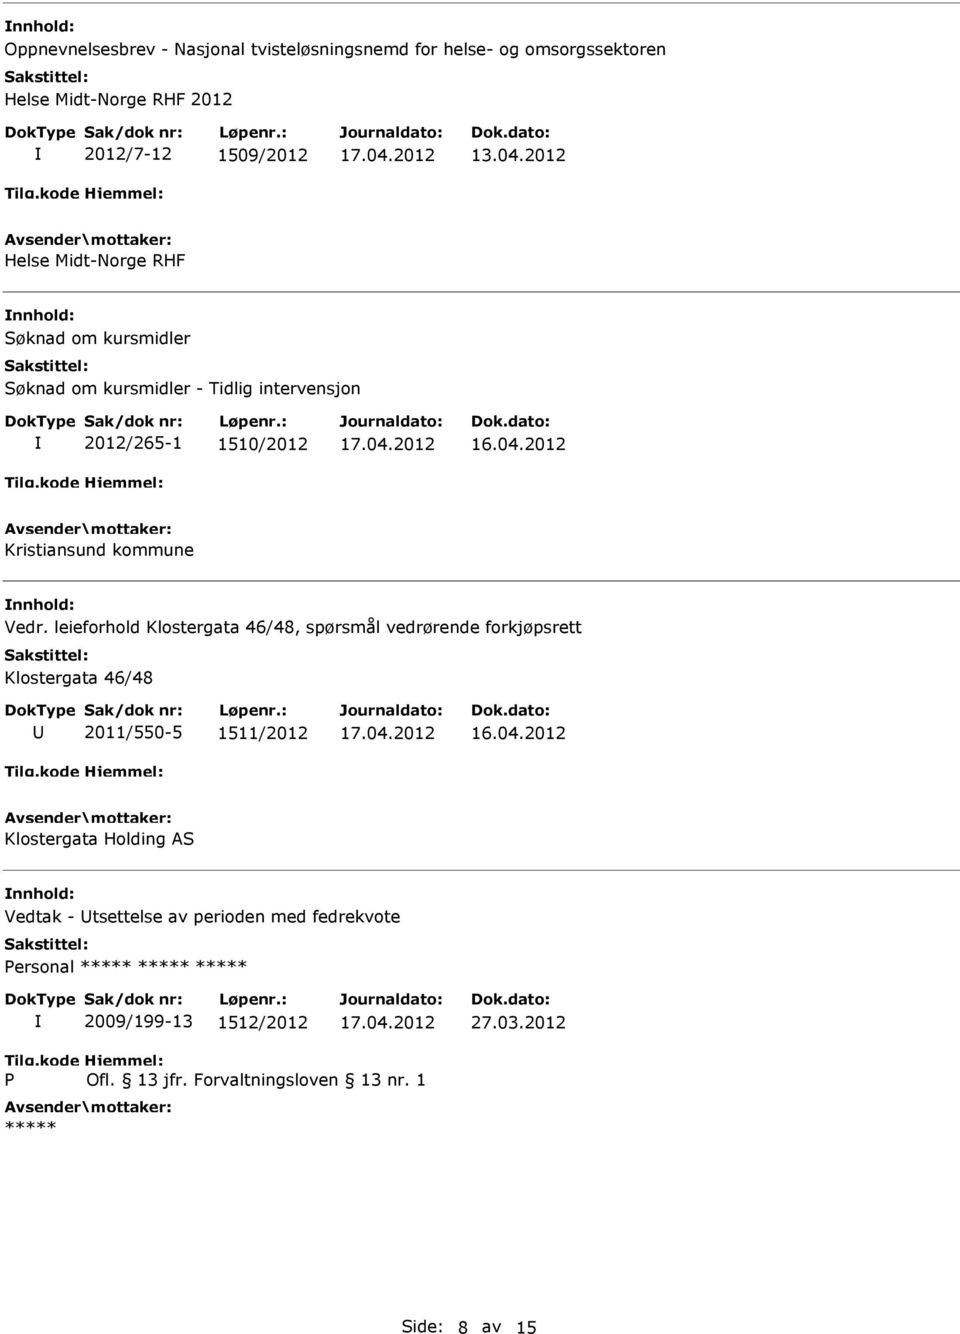 Vedr. leieforhold Klostergata 46/48, spørsmål vedrørende forkjøpsrett Klostergata 46/48 2011/550-5 1511/2012 Klostergata Holding AS